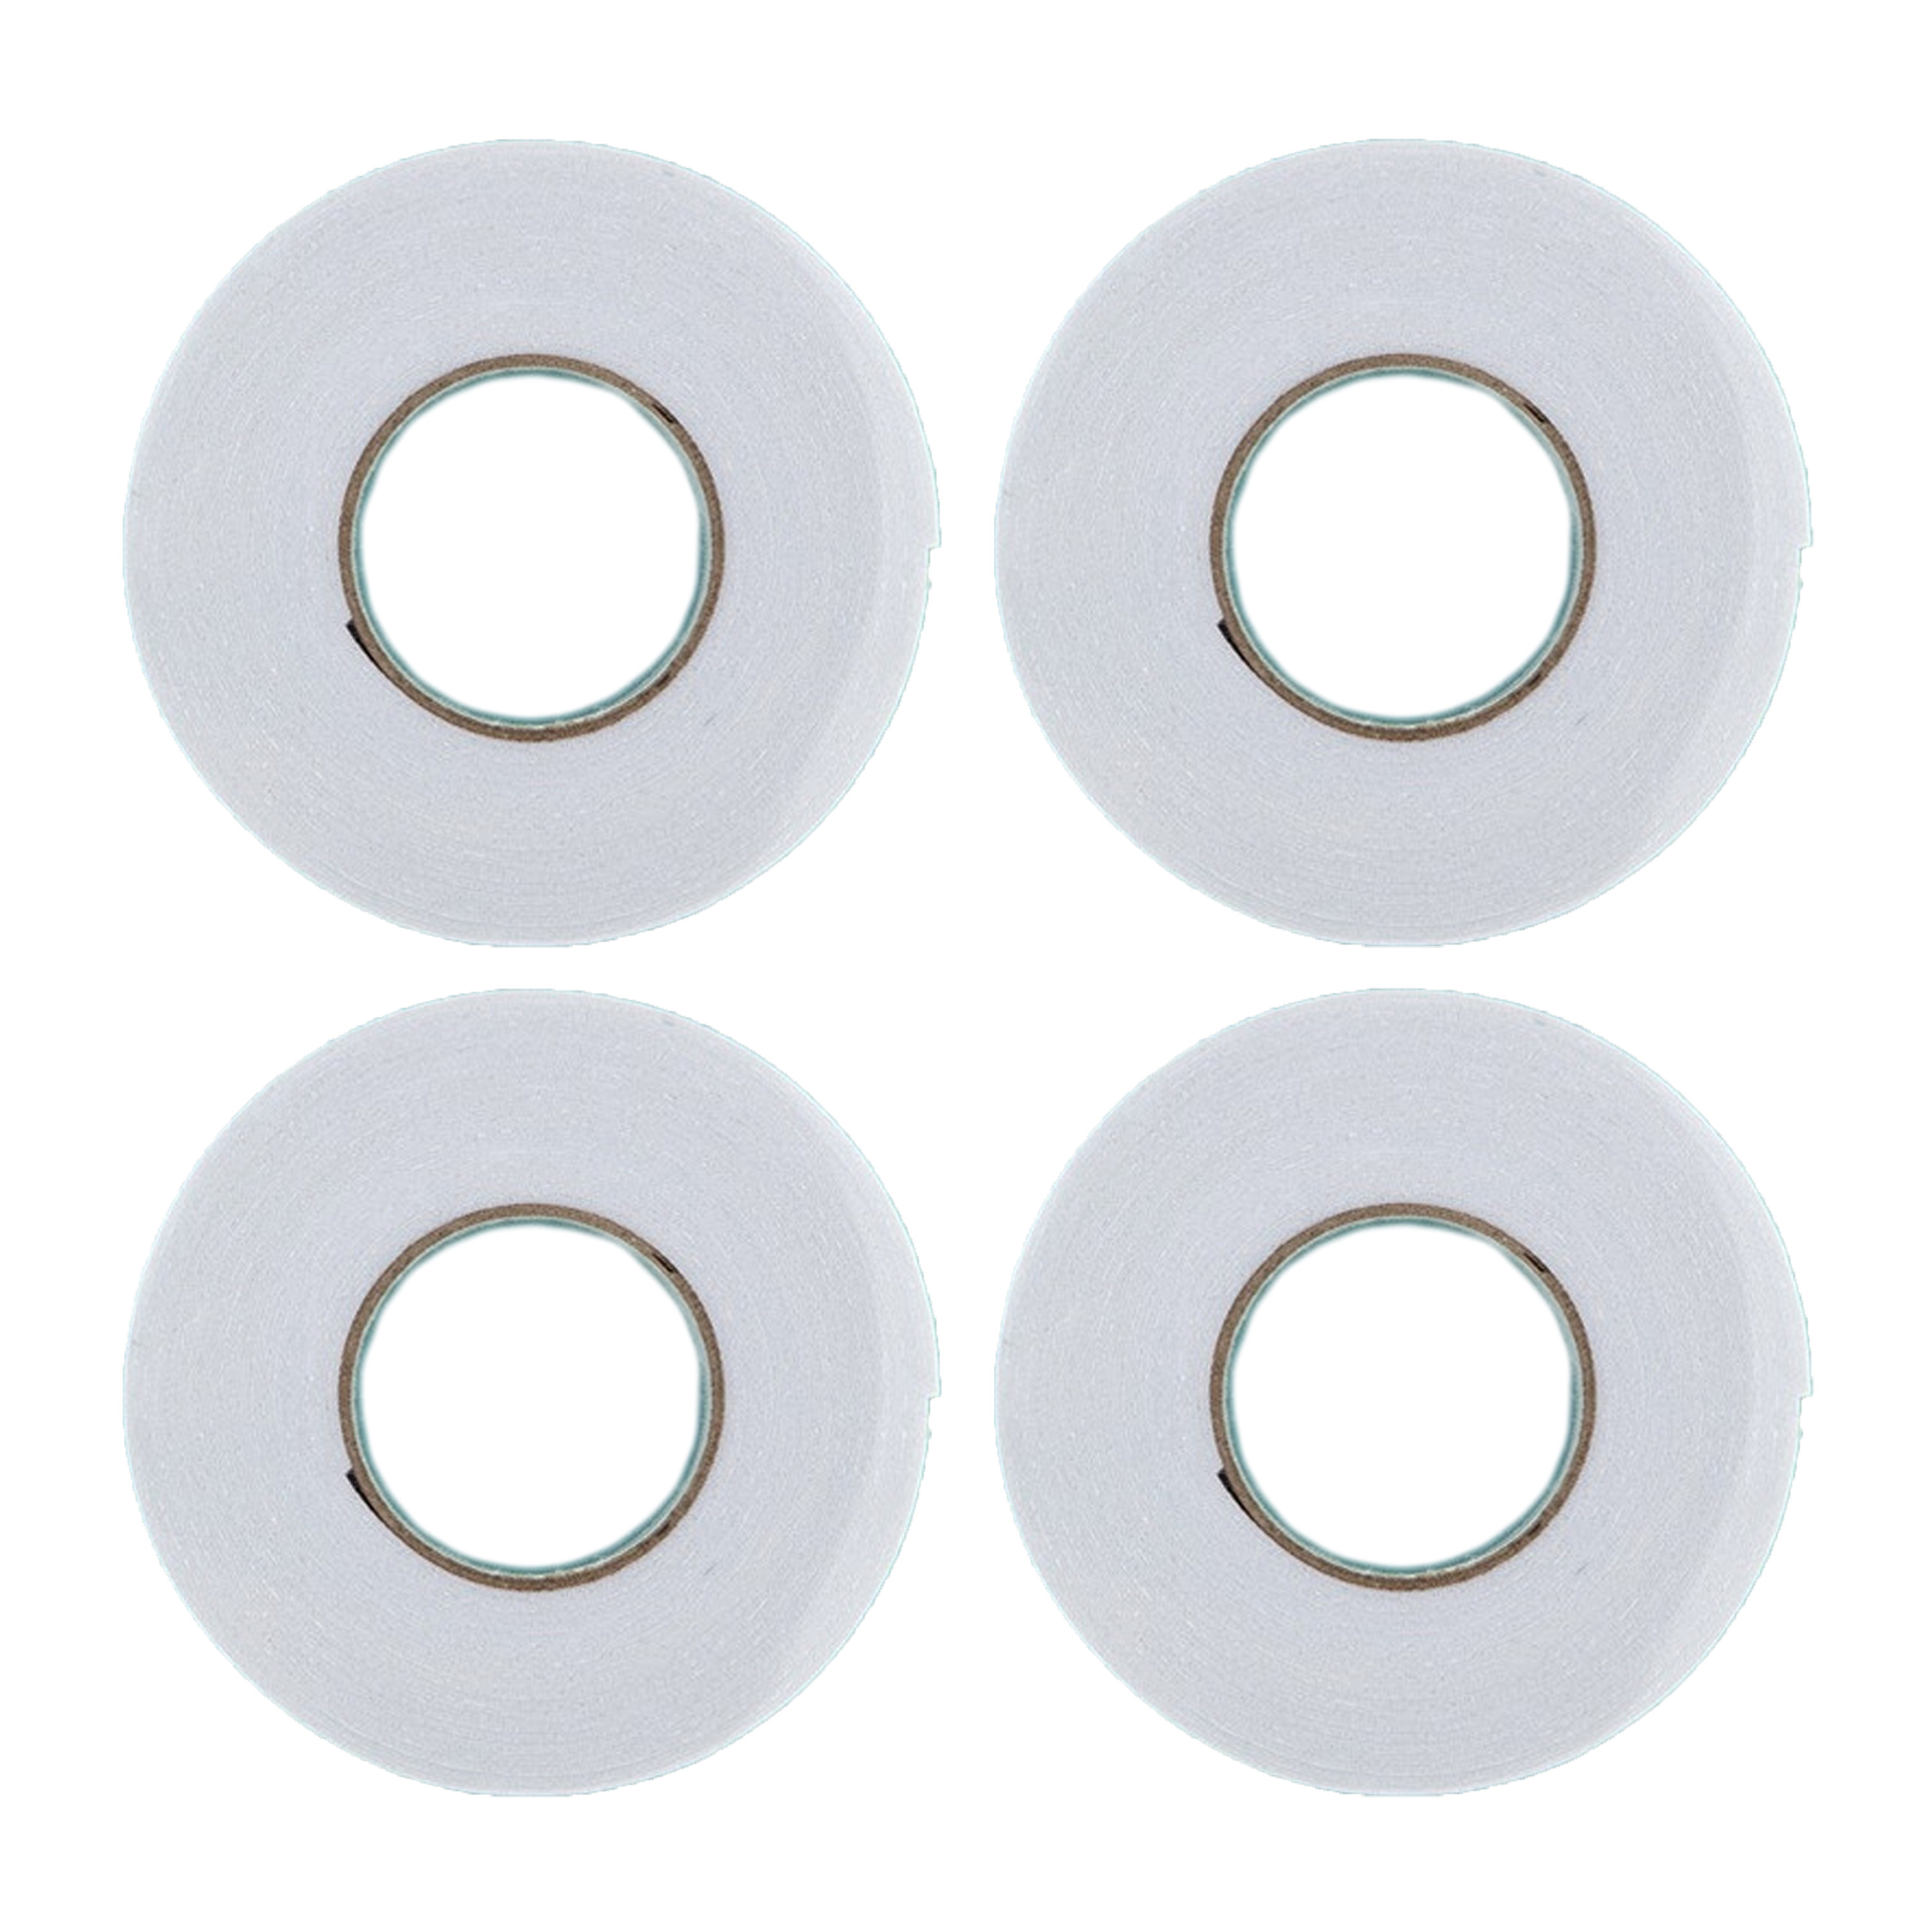 Dubbelzijdig tape-plakband wit 4x rolletje van 400 cm 18 mm breed